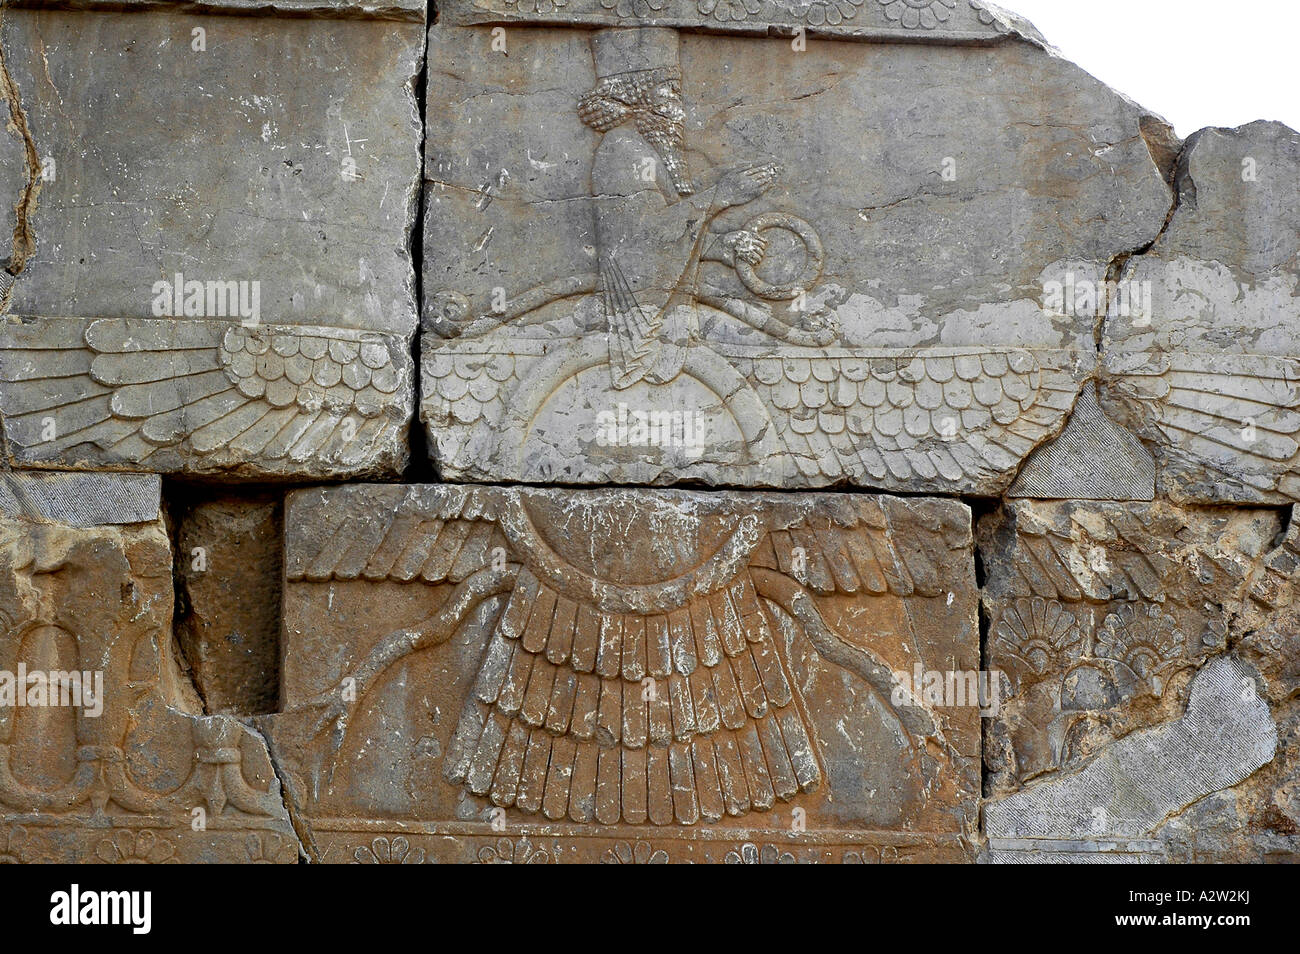 Un bas-relief représentation du symbole ailé de la religion zoroastrienne, à Persépolis, près de Shiraz, Iran Banque D'Images